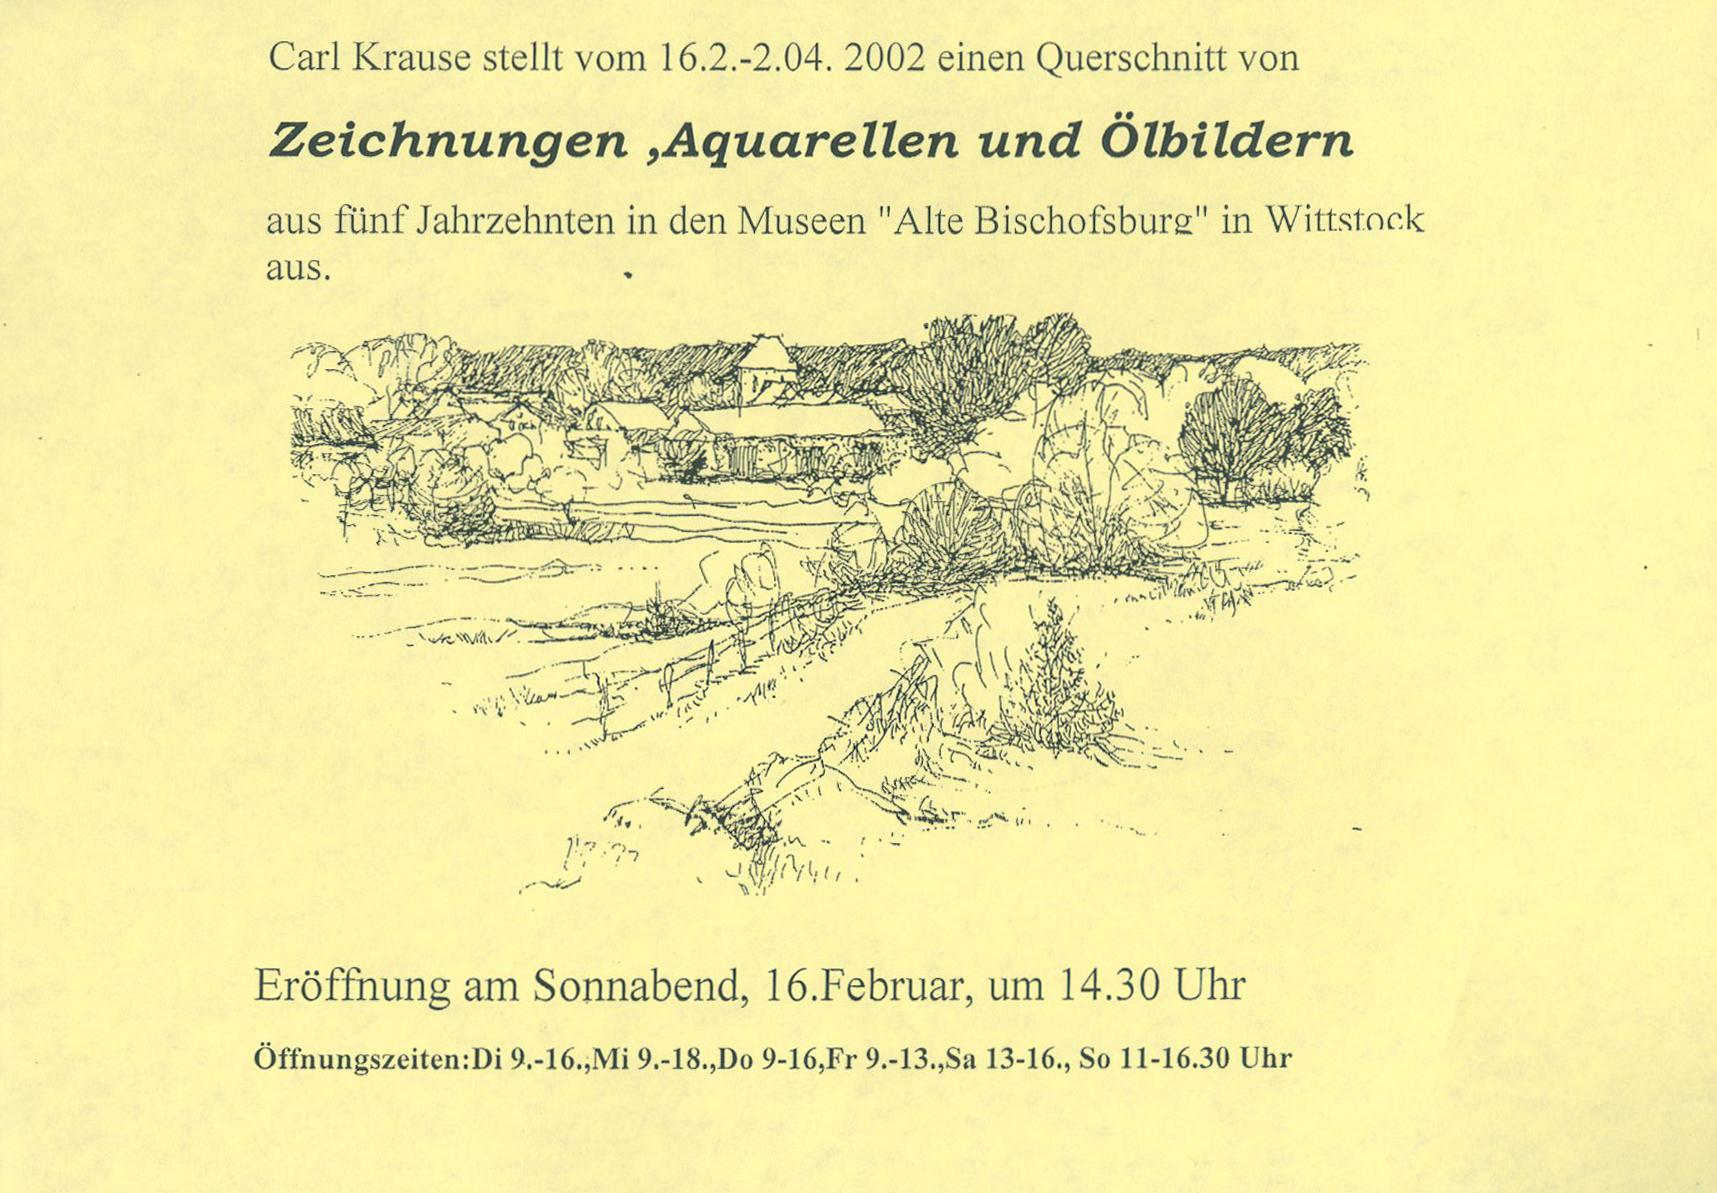 2002 Carls Krause stellt einen Querschnitt vn Zeichnungen, Aquarellen und Ölbildern aus fünf Jahrzehnten in den Museen "Alte Bischofsburg" in Wittstock aus.